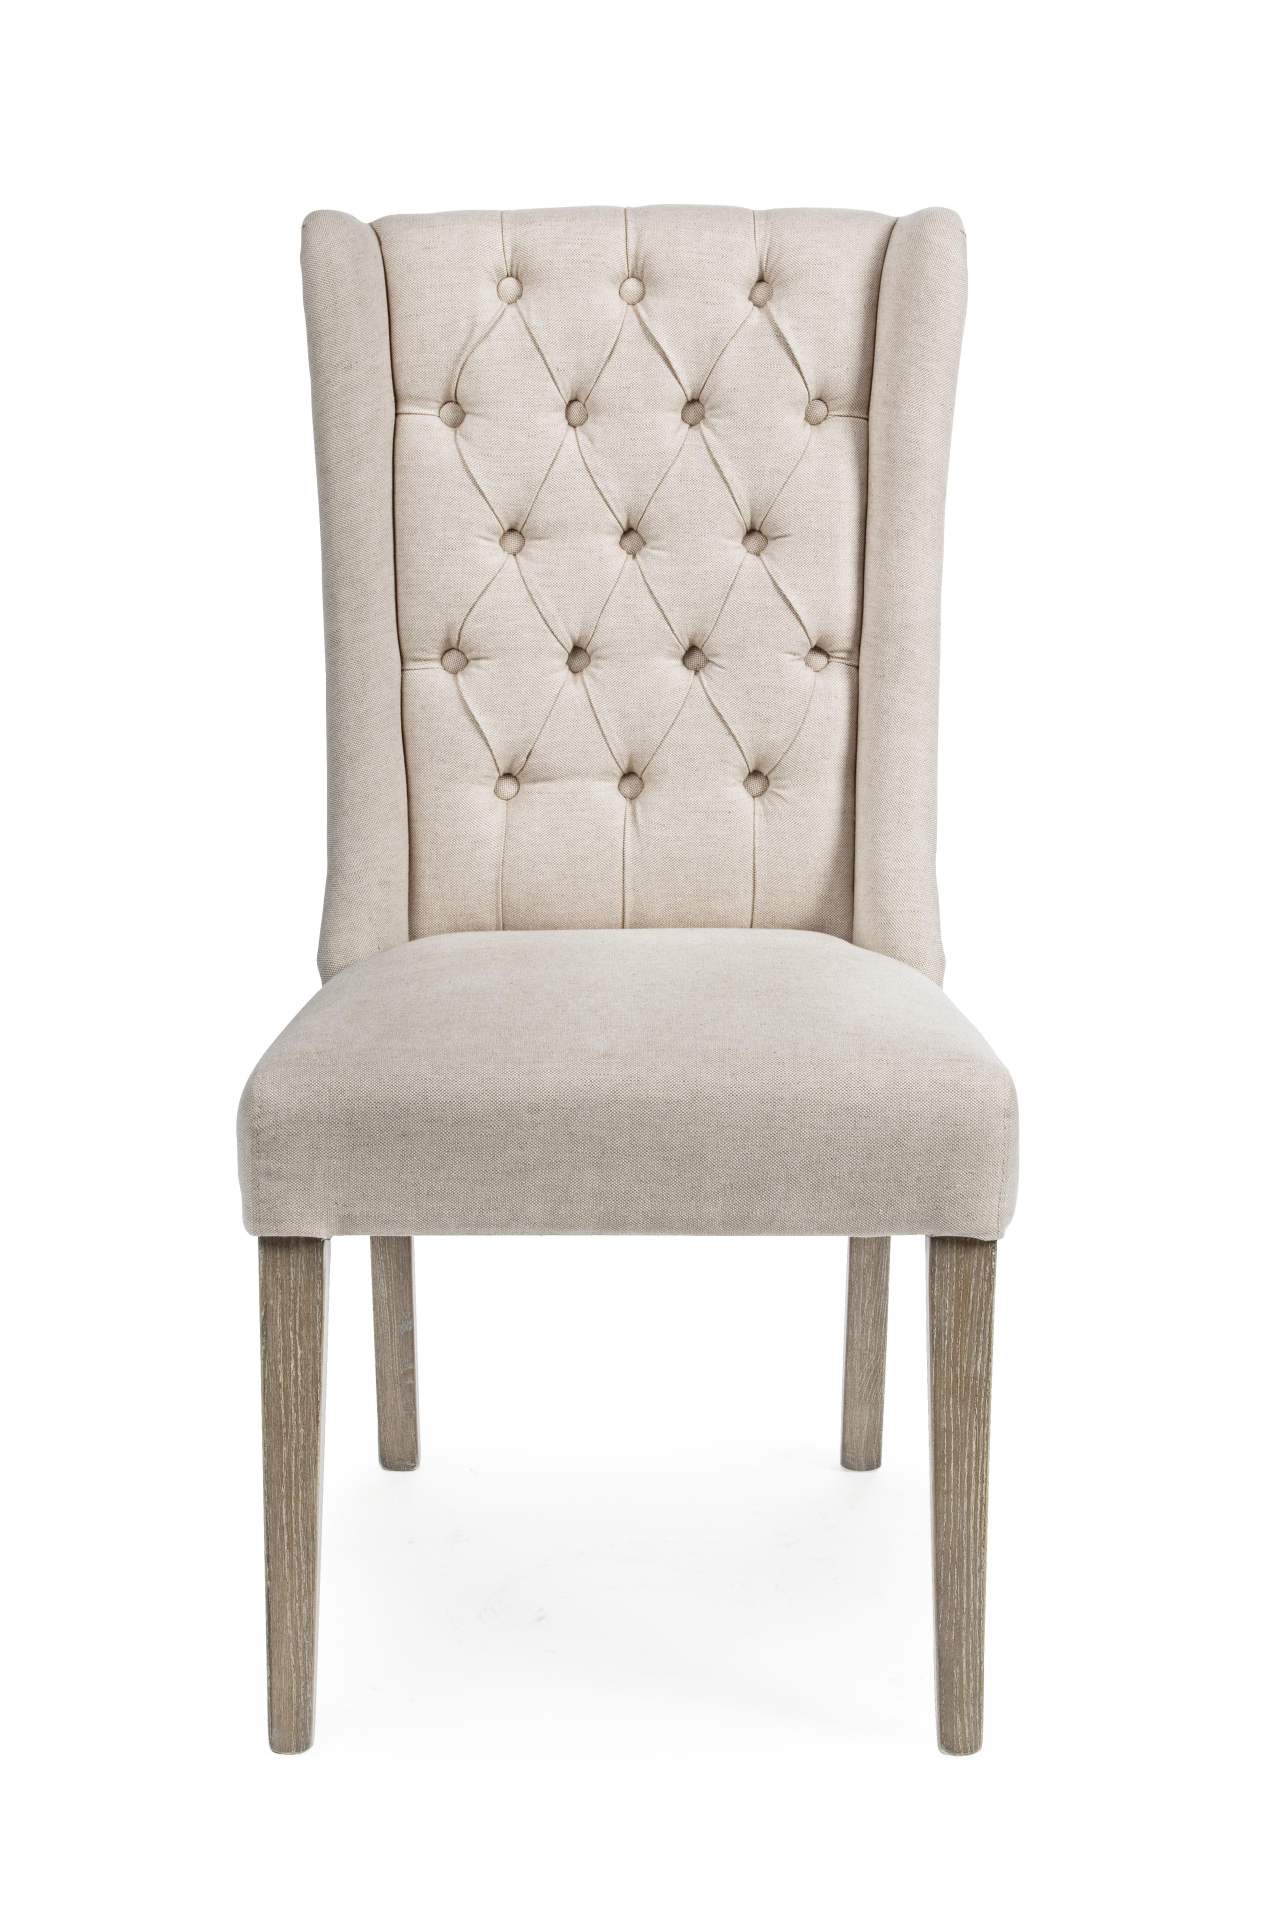 Der Esszimmerstuhl Columbia überzeugt mit seinem klassischen Design. Gefertigt wurde der Stuhl aus Eichenholz, welches einen natürlichen Farbton besitzt. Der Bezug ist aus einem Mix aus Baumwolle und leinen und hat eine Beige Farbe. Die Sitzhöhe beträgt 4